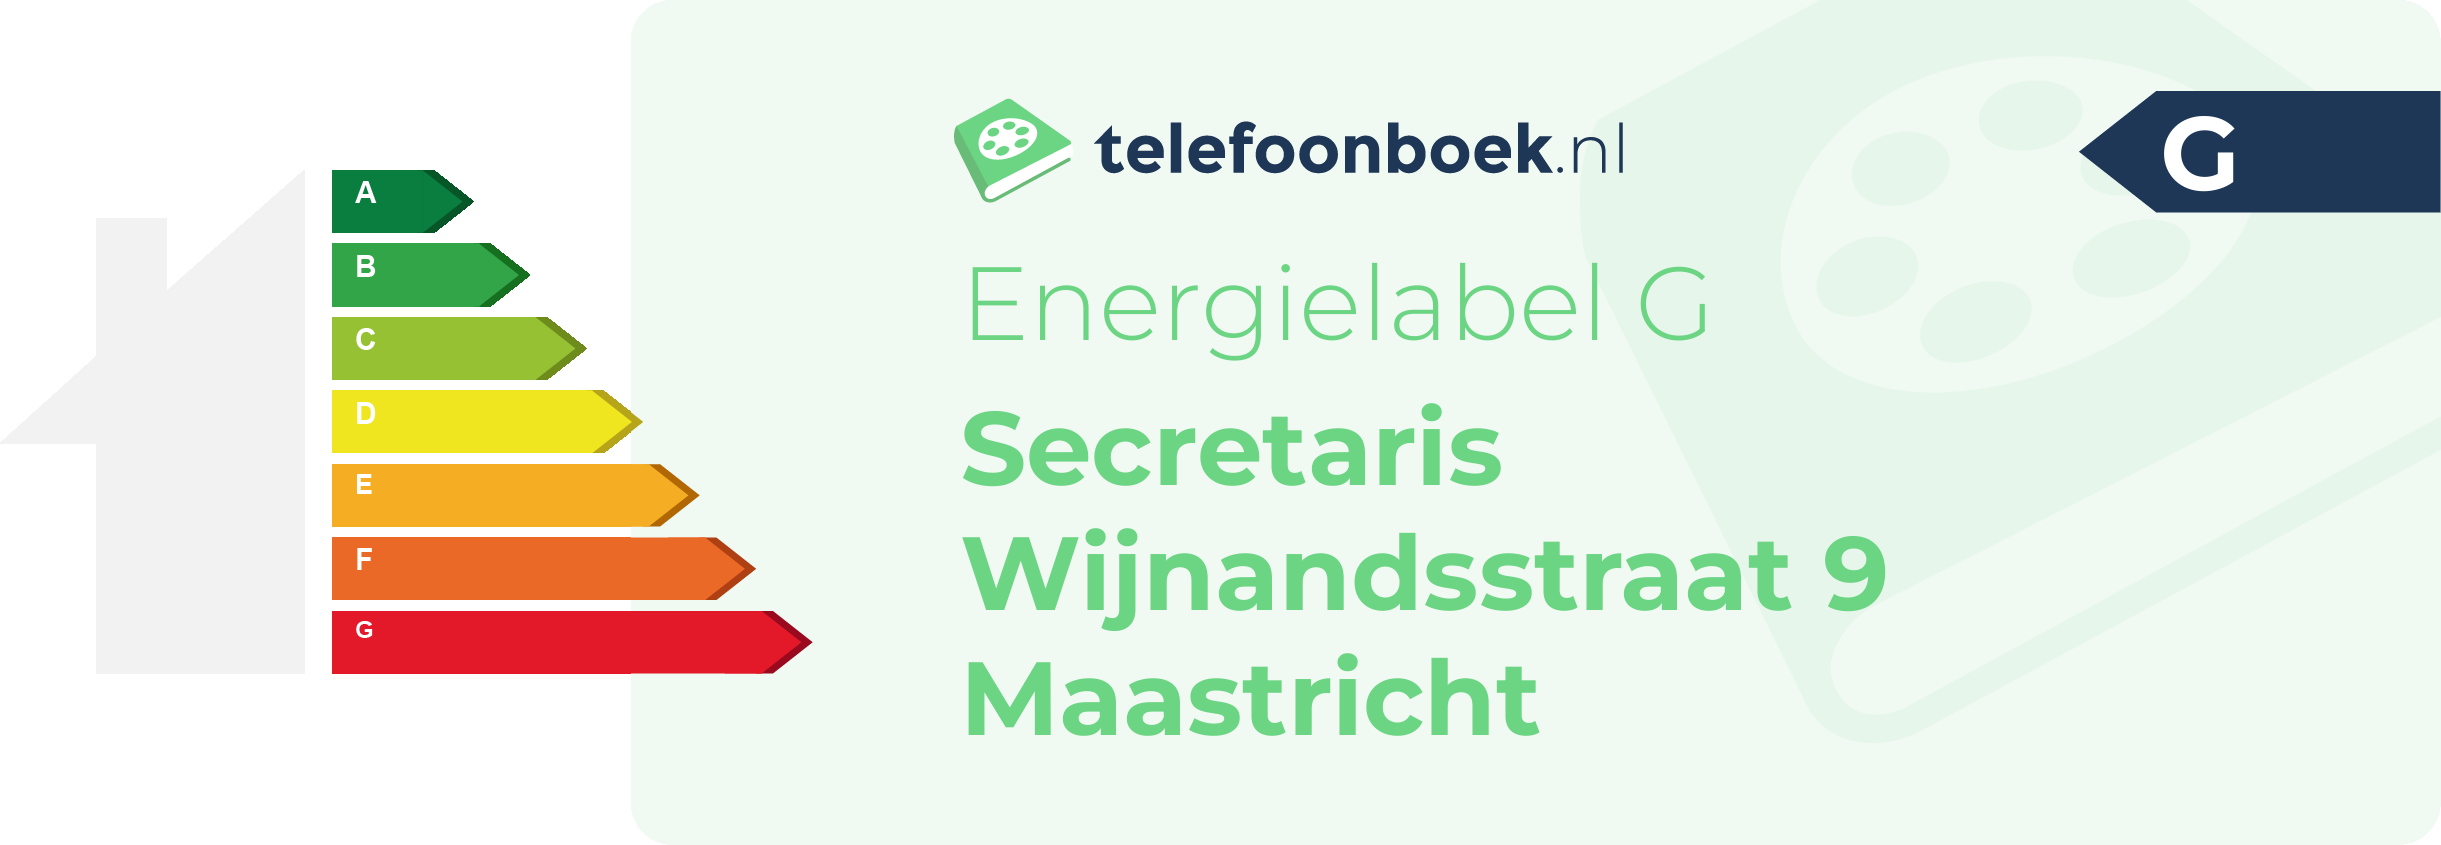 Energielabel Secretaris Wijnandsstraat 9 Maastricht